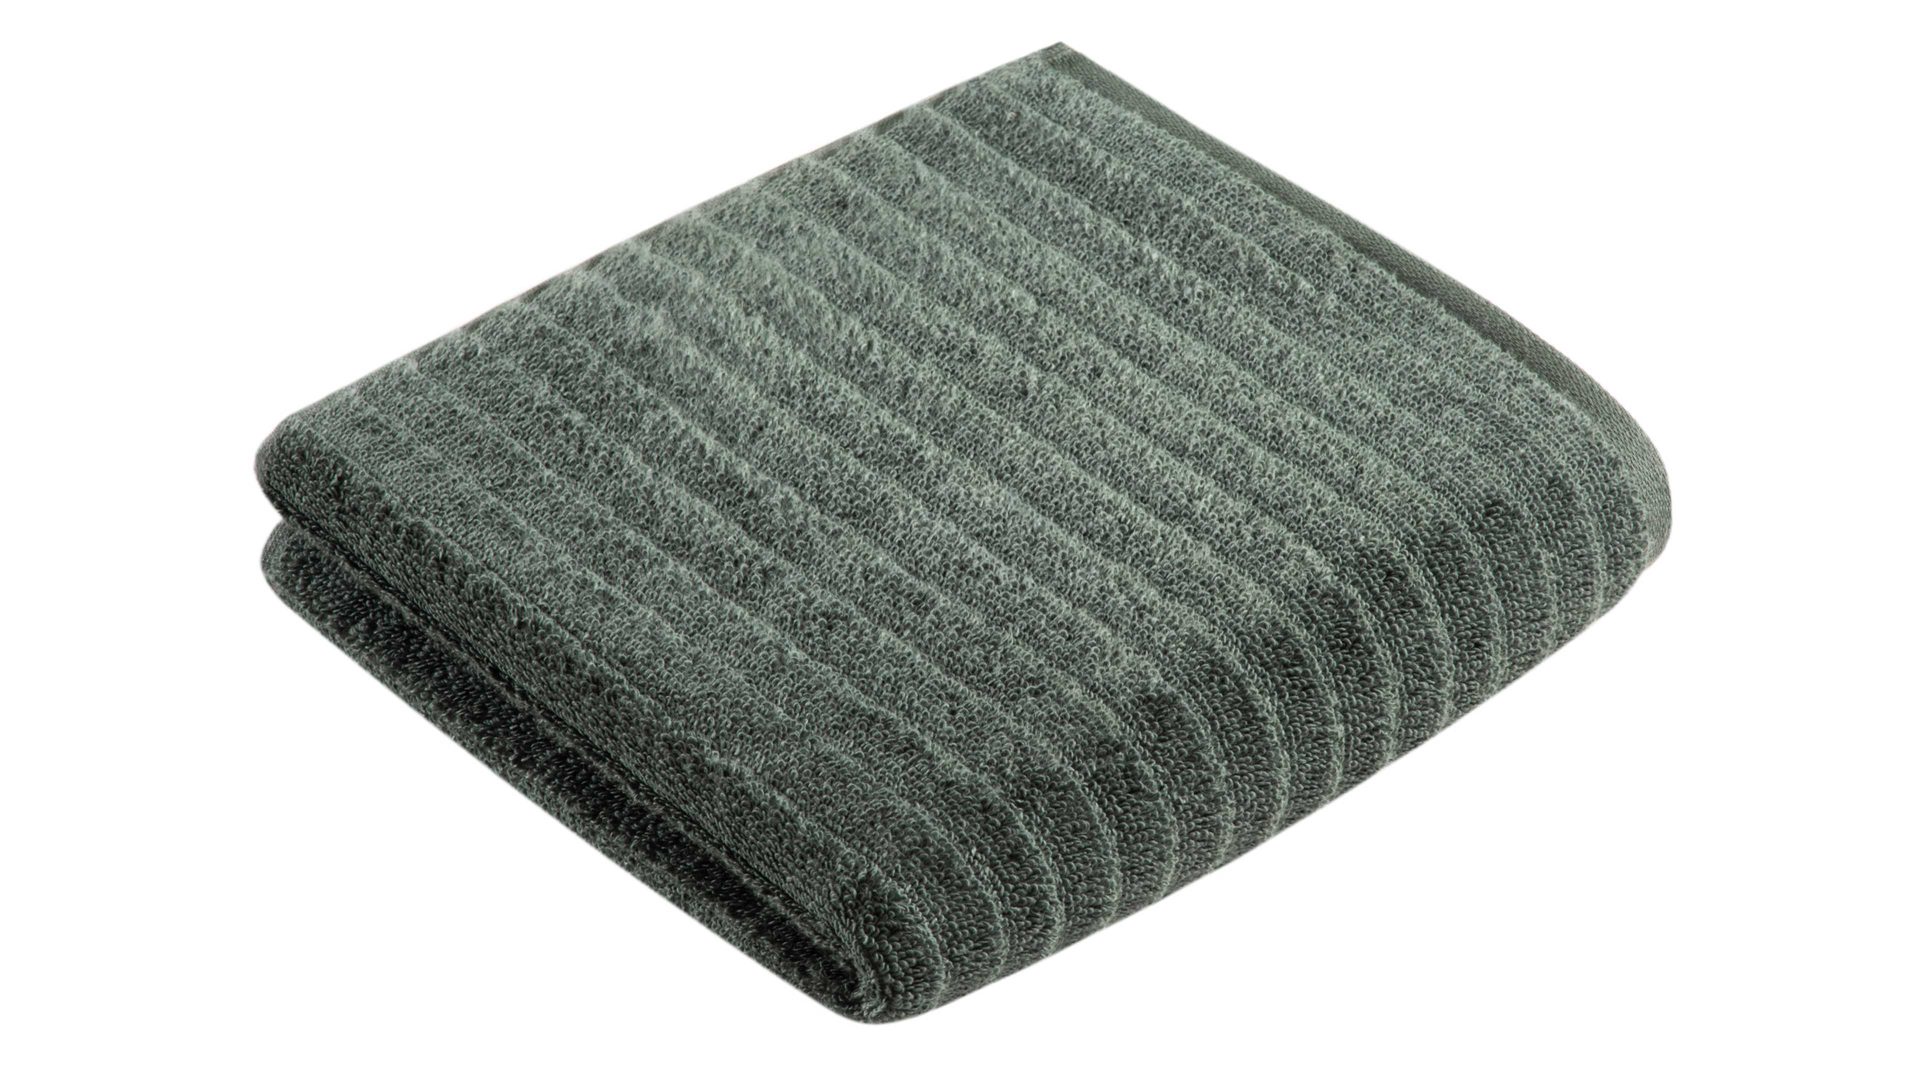 Handtuch Vossen aus Naturfaser in Dunkelgrün VOSSEN® Frottee-Serie Mystic - Handtuch fjordfarbene Baumwolle - ca. 60 x 110 cm